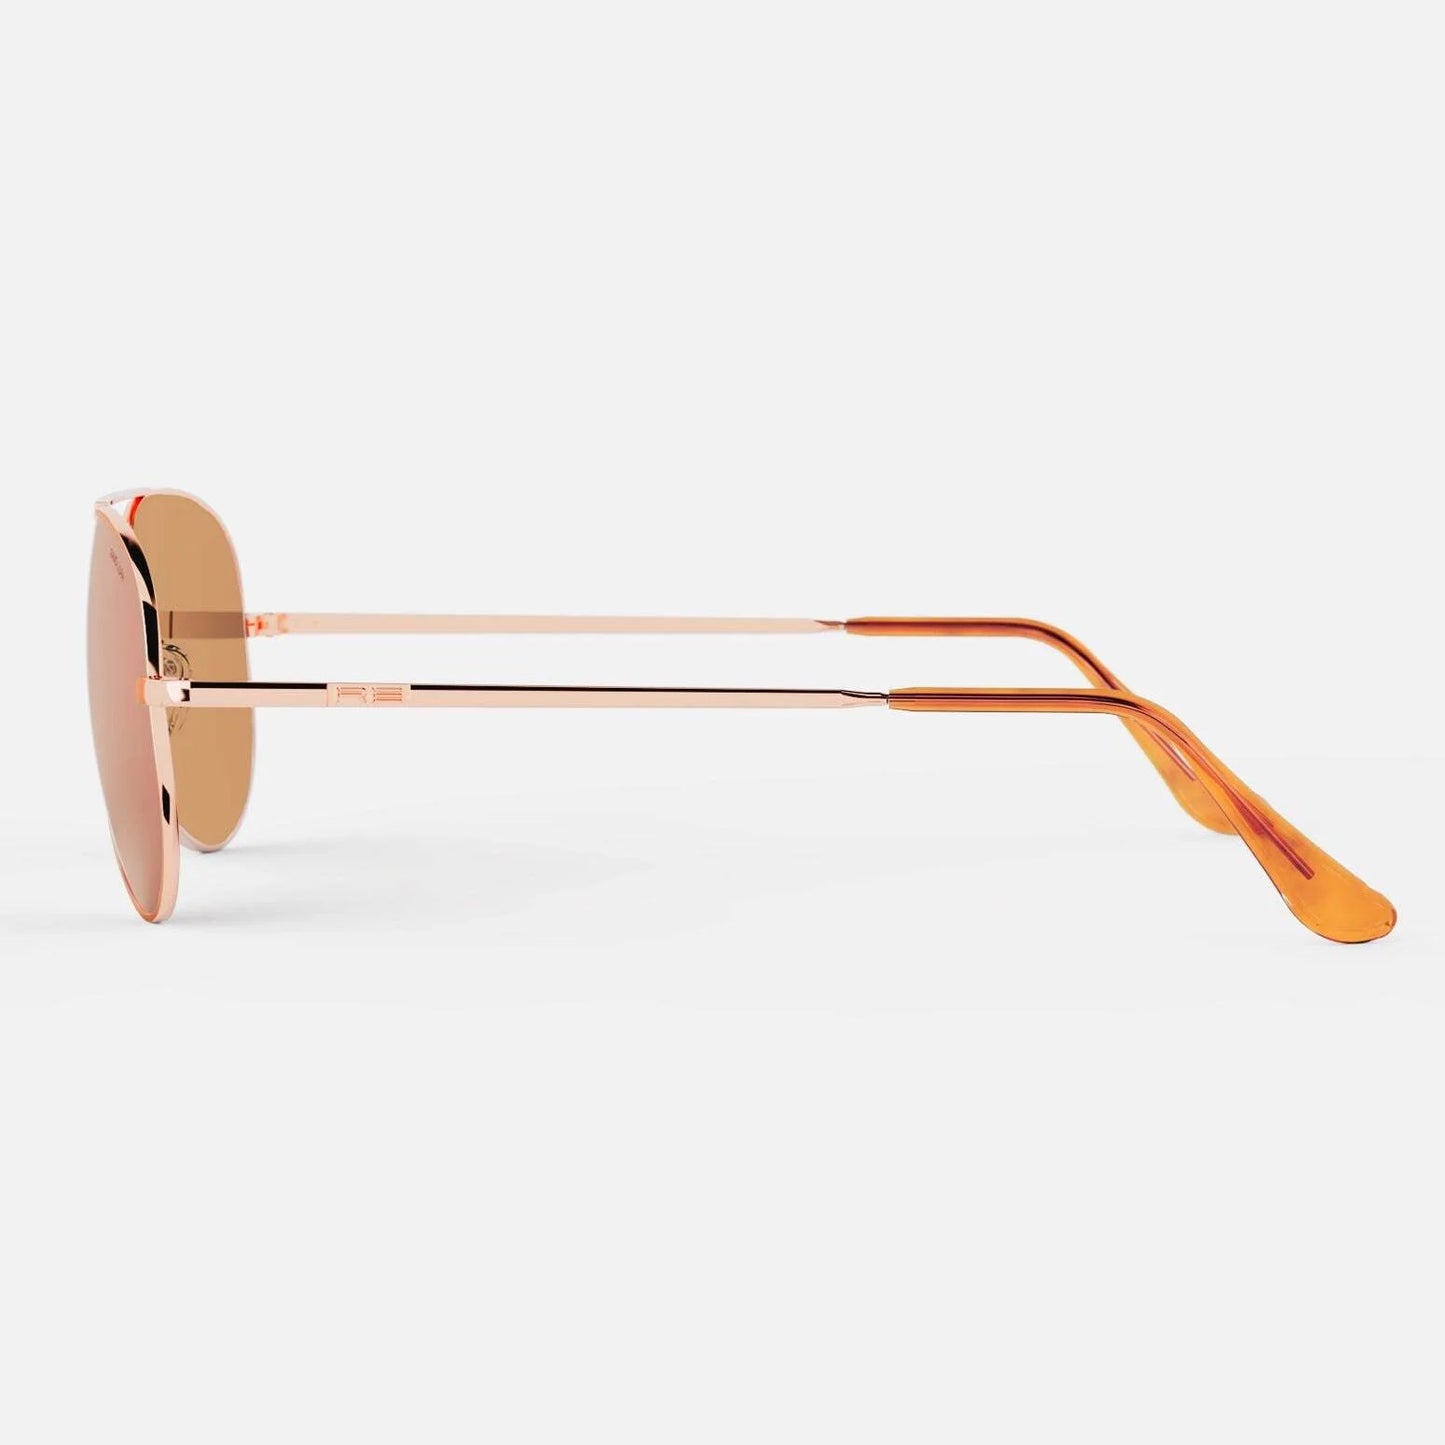 Randolph Concorde Sunglasses